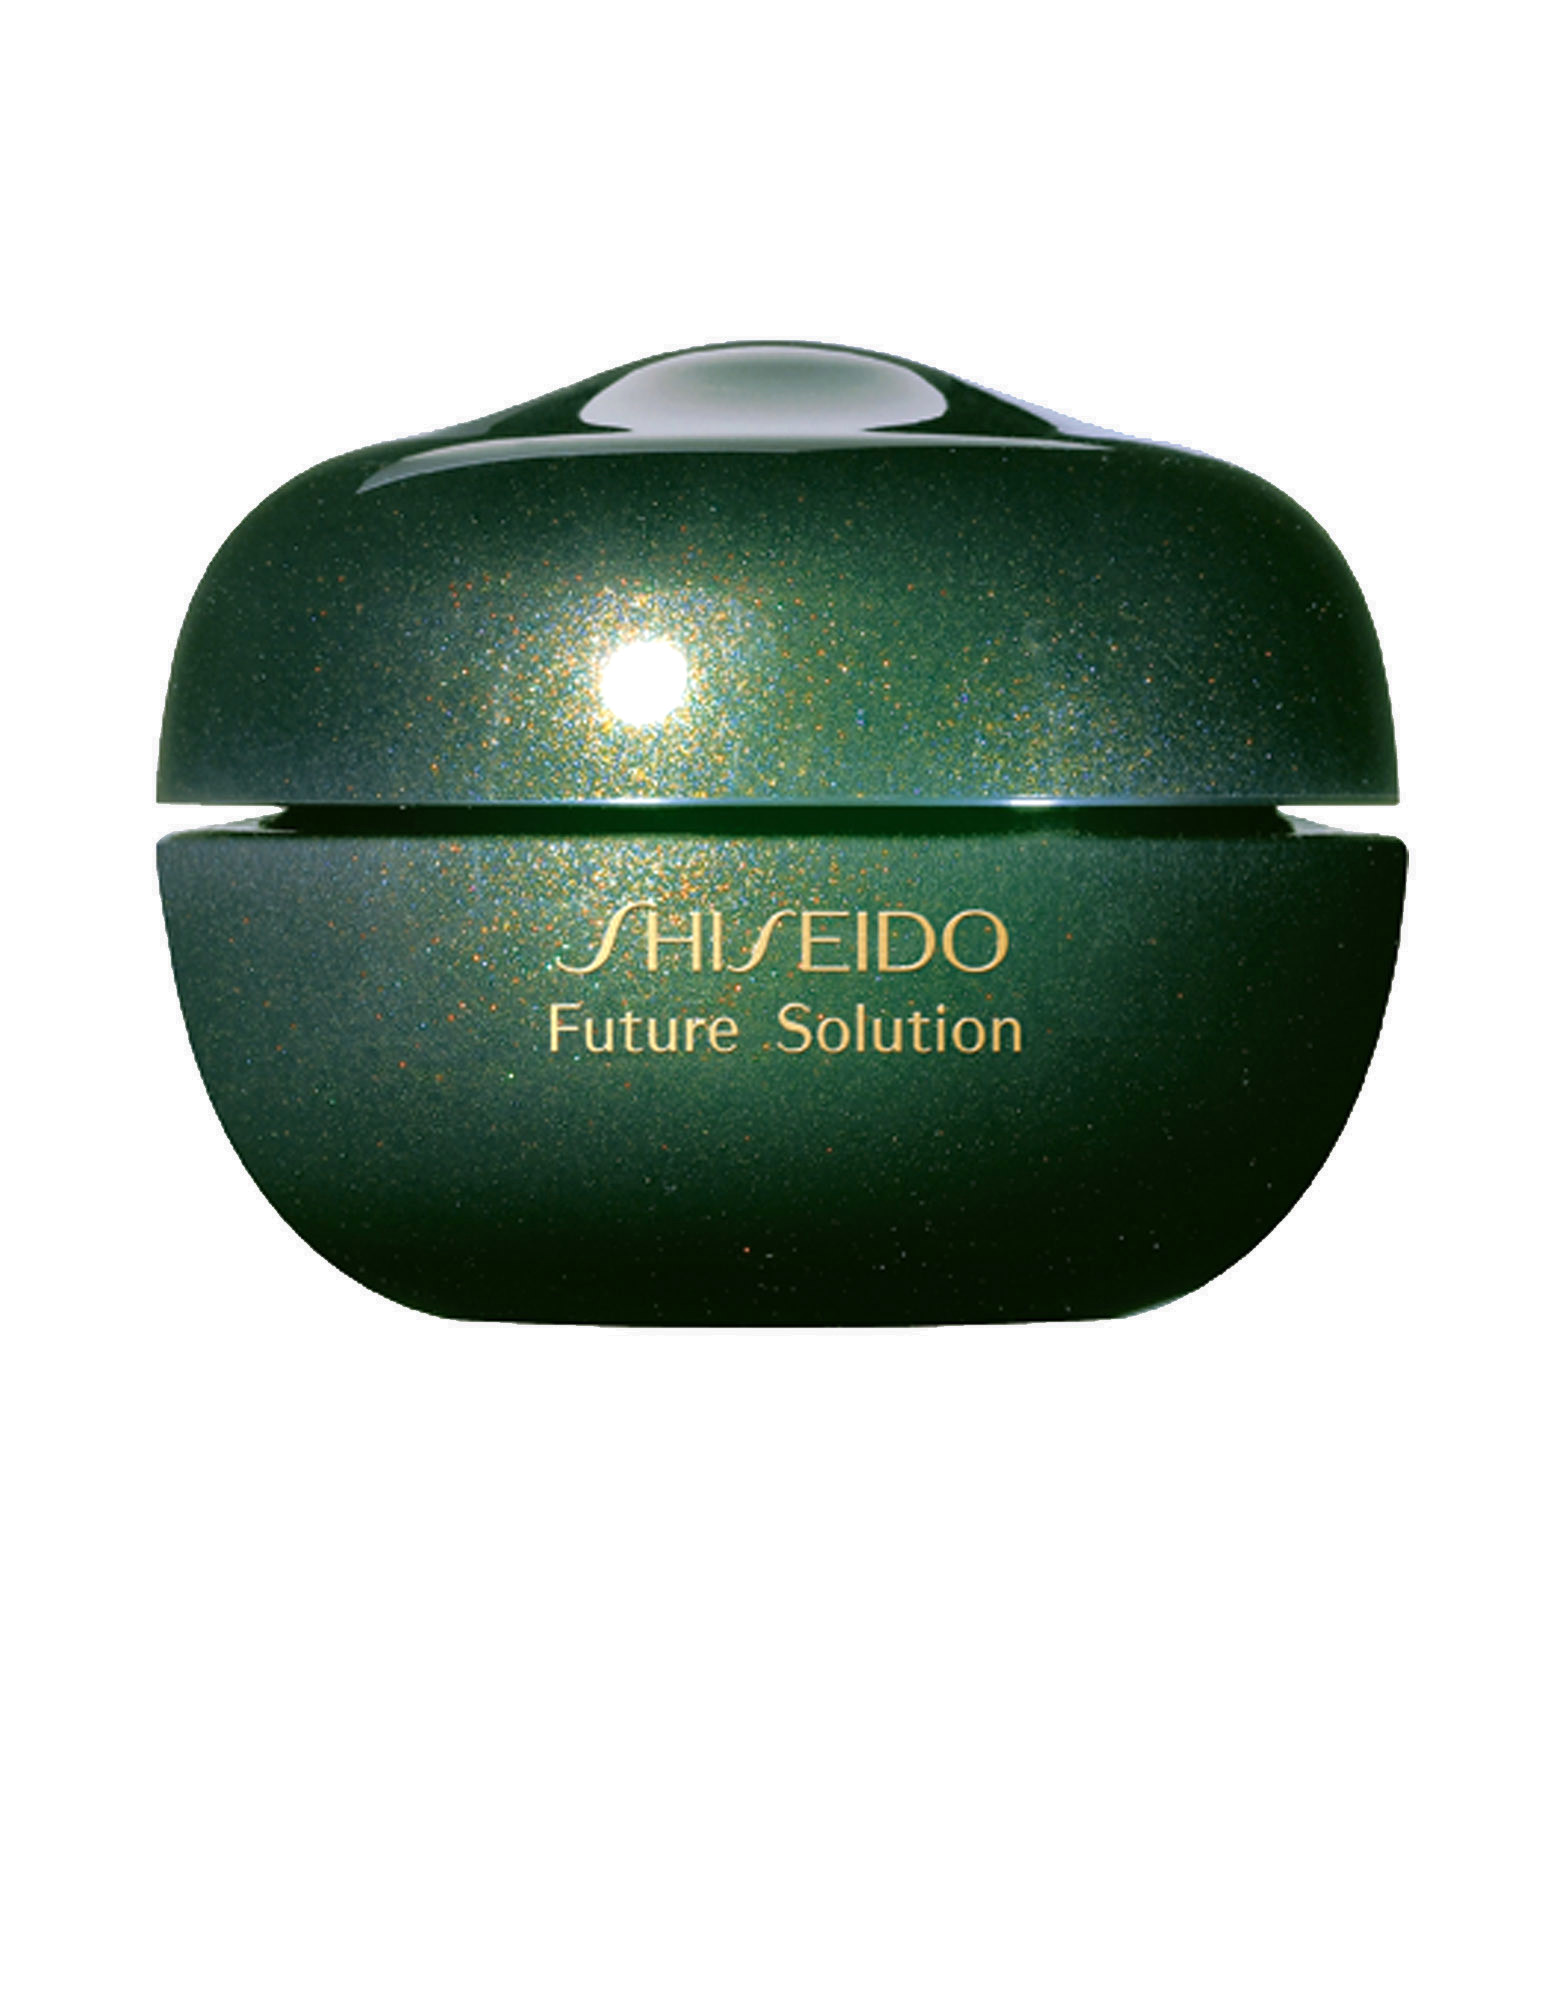 Шисейдо крем вокруг глаз. Shary Snail Eye Lip Contour Cream. Regenerating Eye Lift Essence Cream. Shiseido Future solution LX ночной крем чье производство.